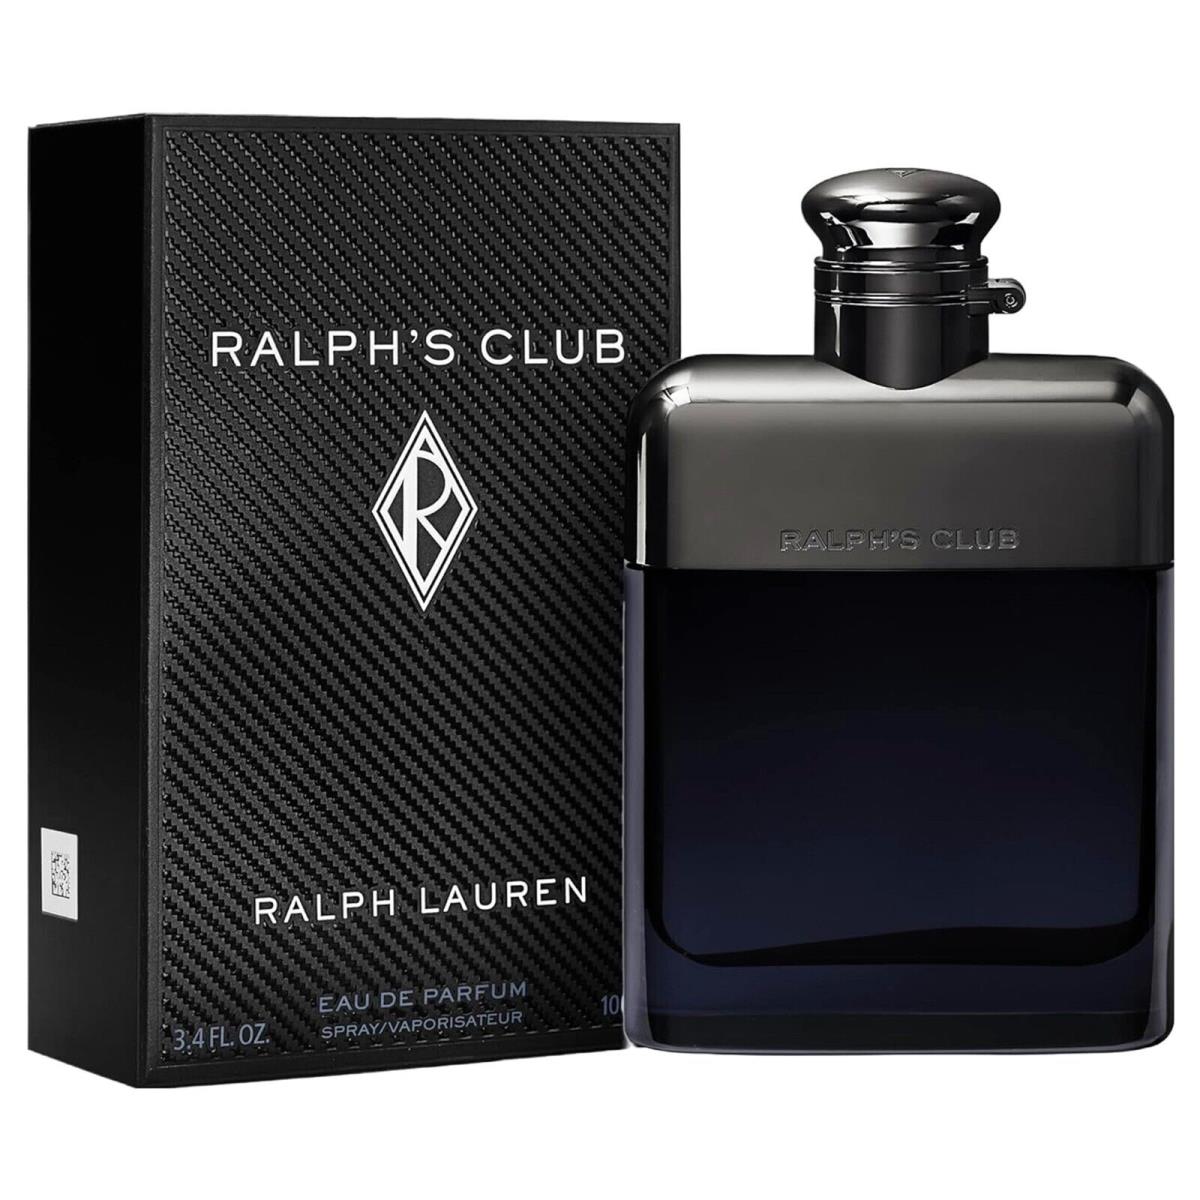 Ralph`s Club Cologne by Ralph Lauren Men Perfume Eau De Parfum Spray 3.4 oz Edp